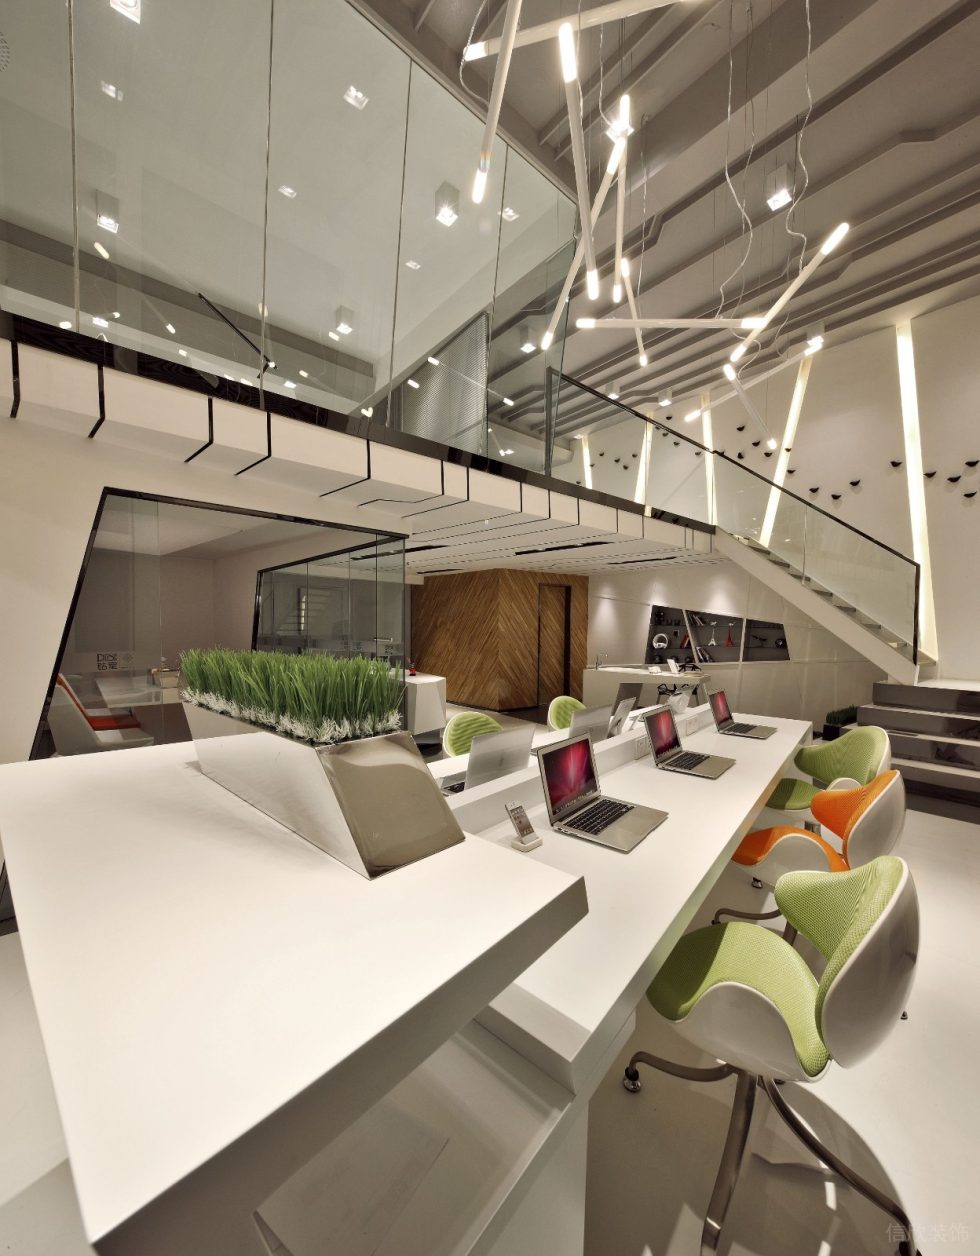 深圳宝安稻兴环球科创中心350平方米现代主义科幻风loft办公室装修案例一层工作区